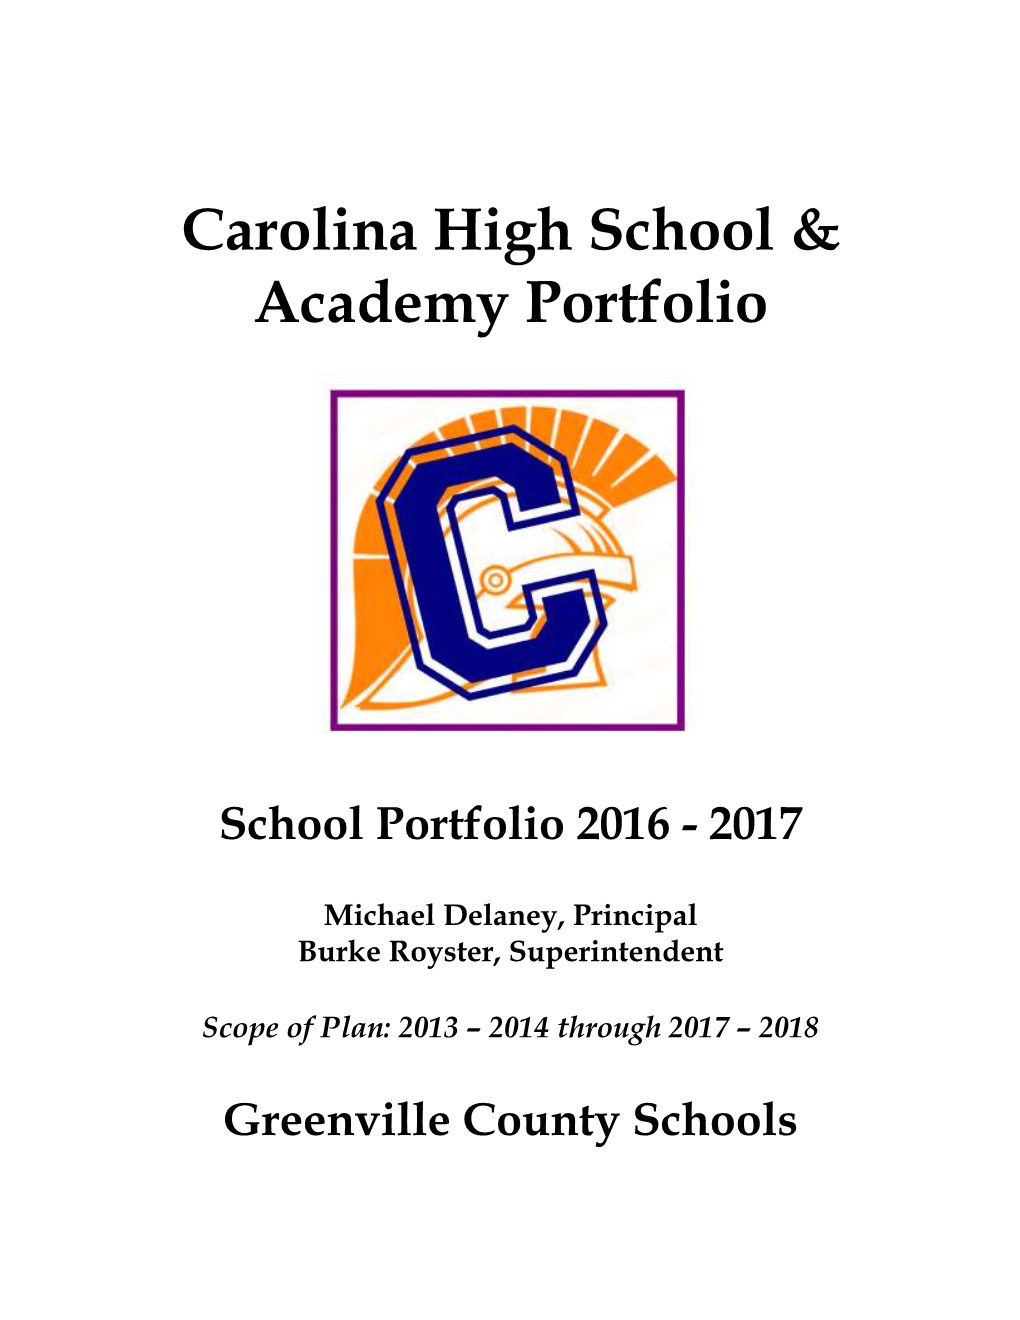 Carolina High School & Academy Portfolio